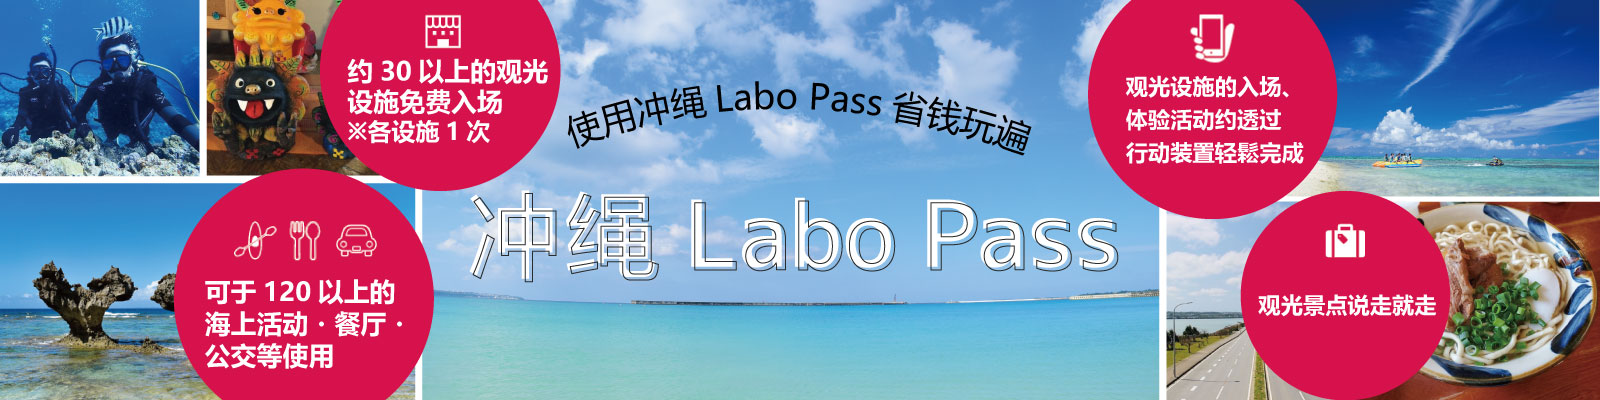 冲绳Labo Pass(沖縄ラボPass)